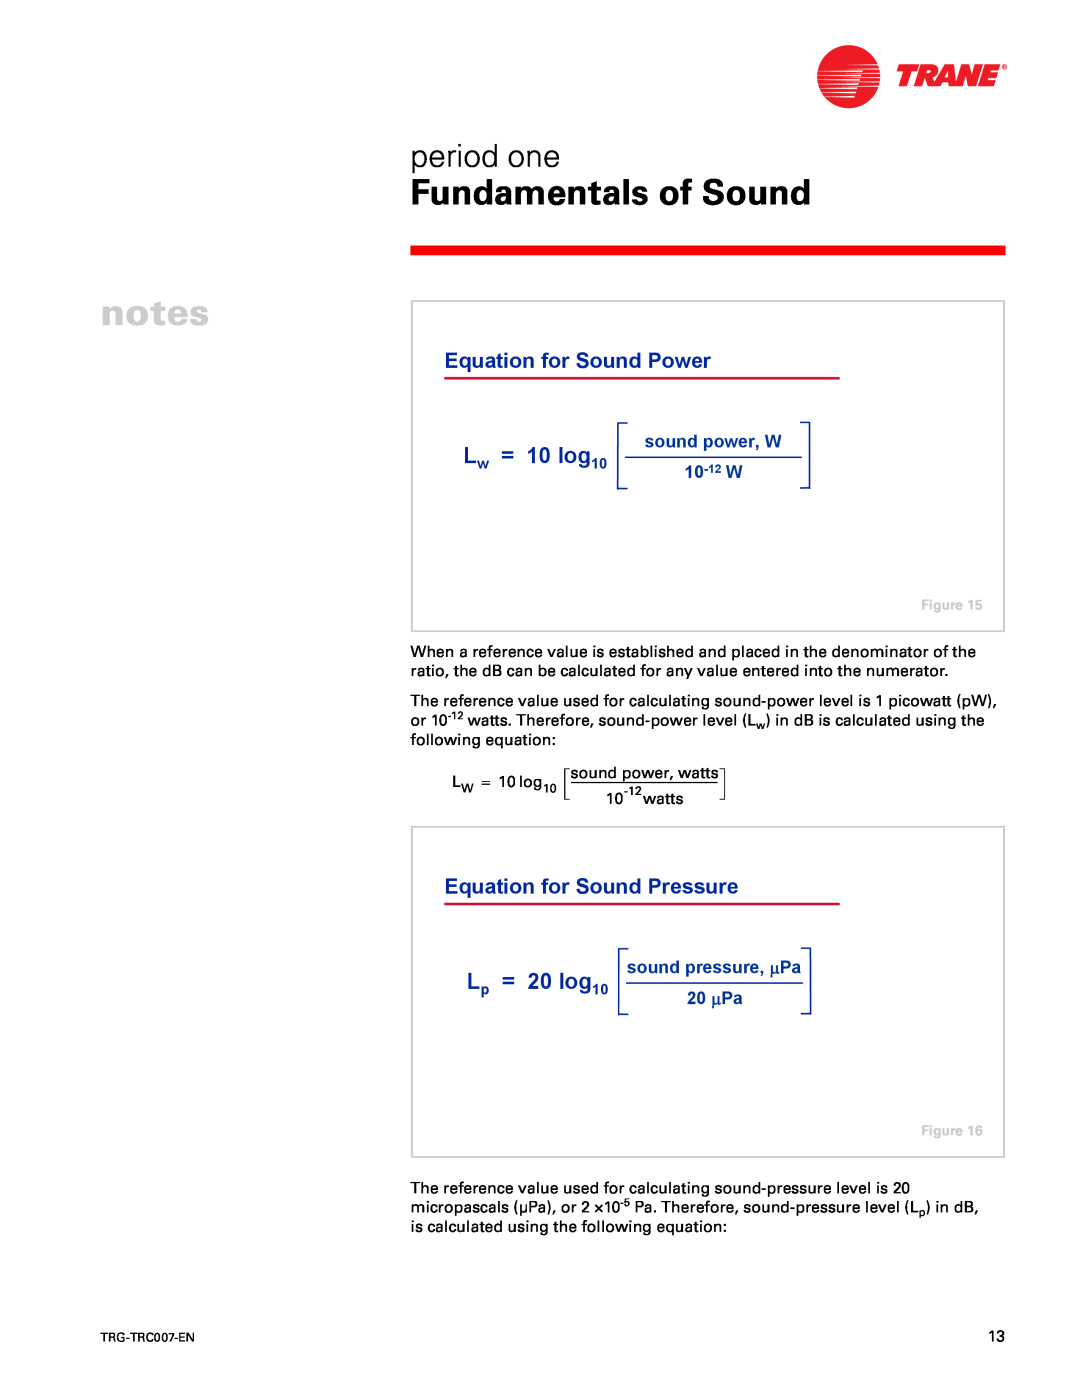 Trane TRG-TRC007-EN = 10 log10, = 20 log10, Equation for Sound Power, Equation for Sound Pressure, Fundamentals of Sound 